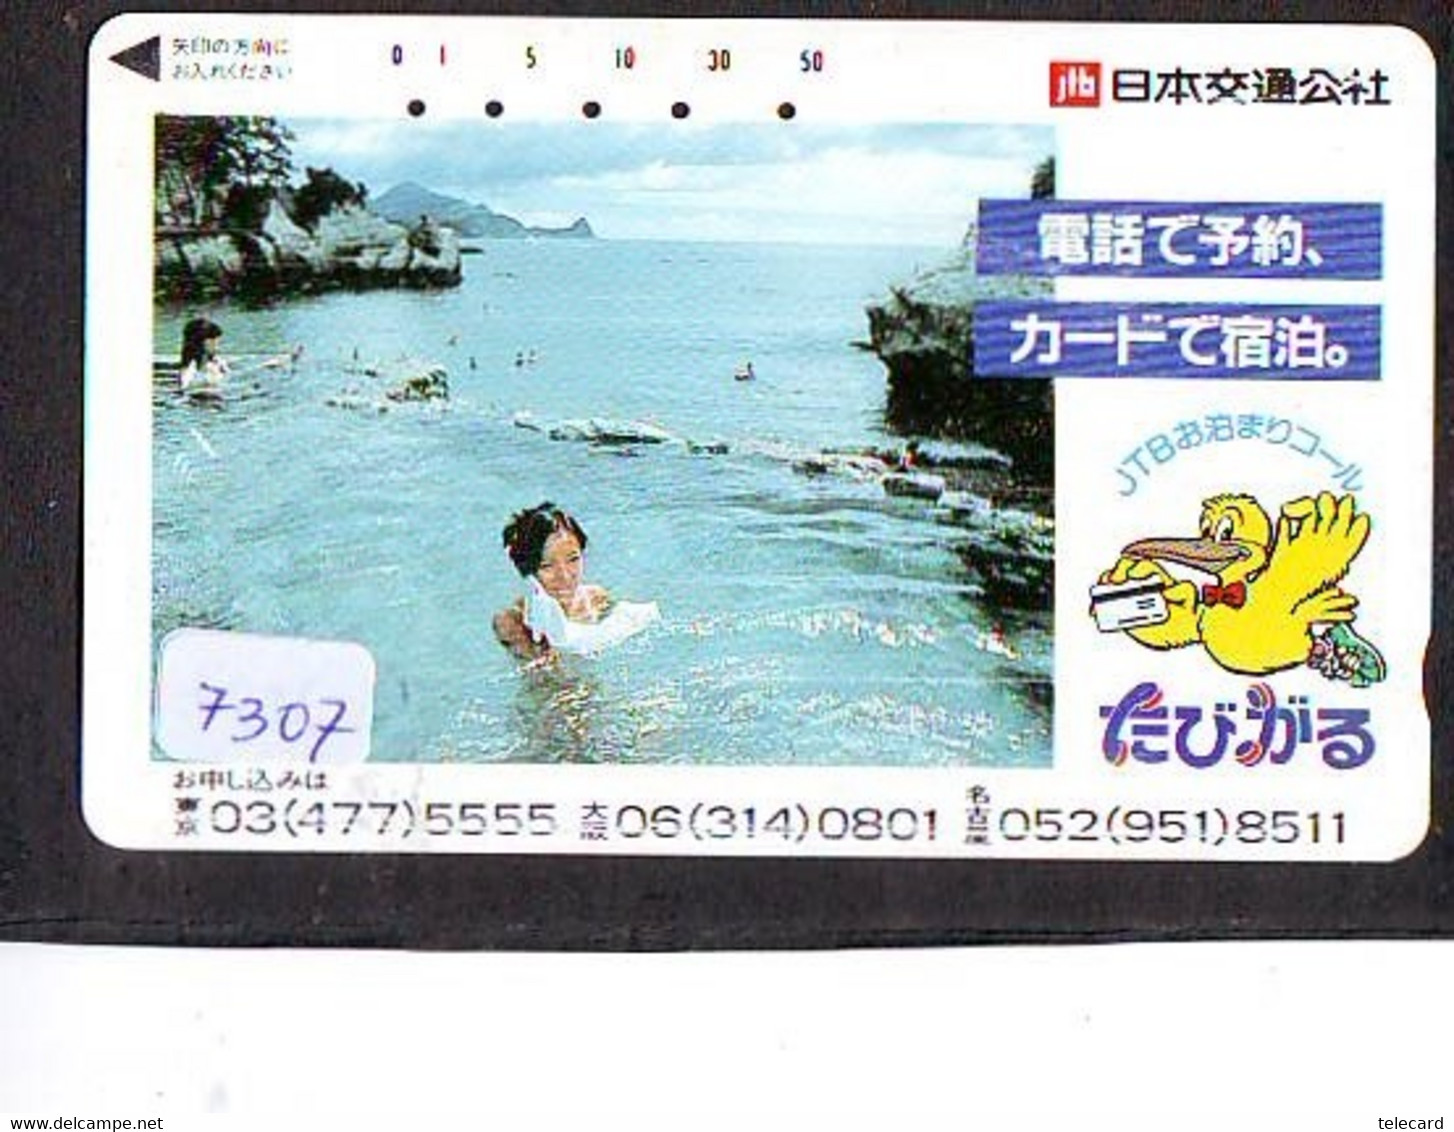 Télécarte Japon * FEMME EROTIQUE (7307) BATH * PHONECARD JAPAN * TELEFONKARTE *  BATHCLOTHES LINGERIE - Mode